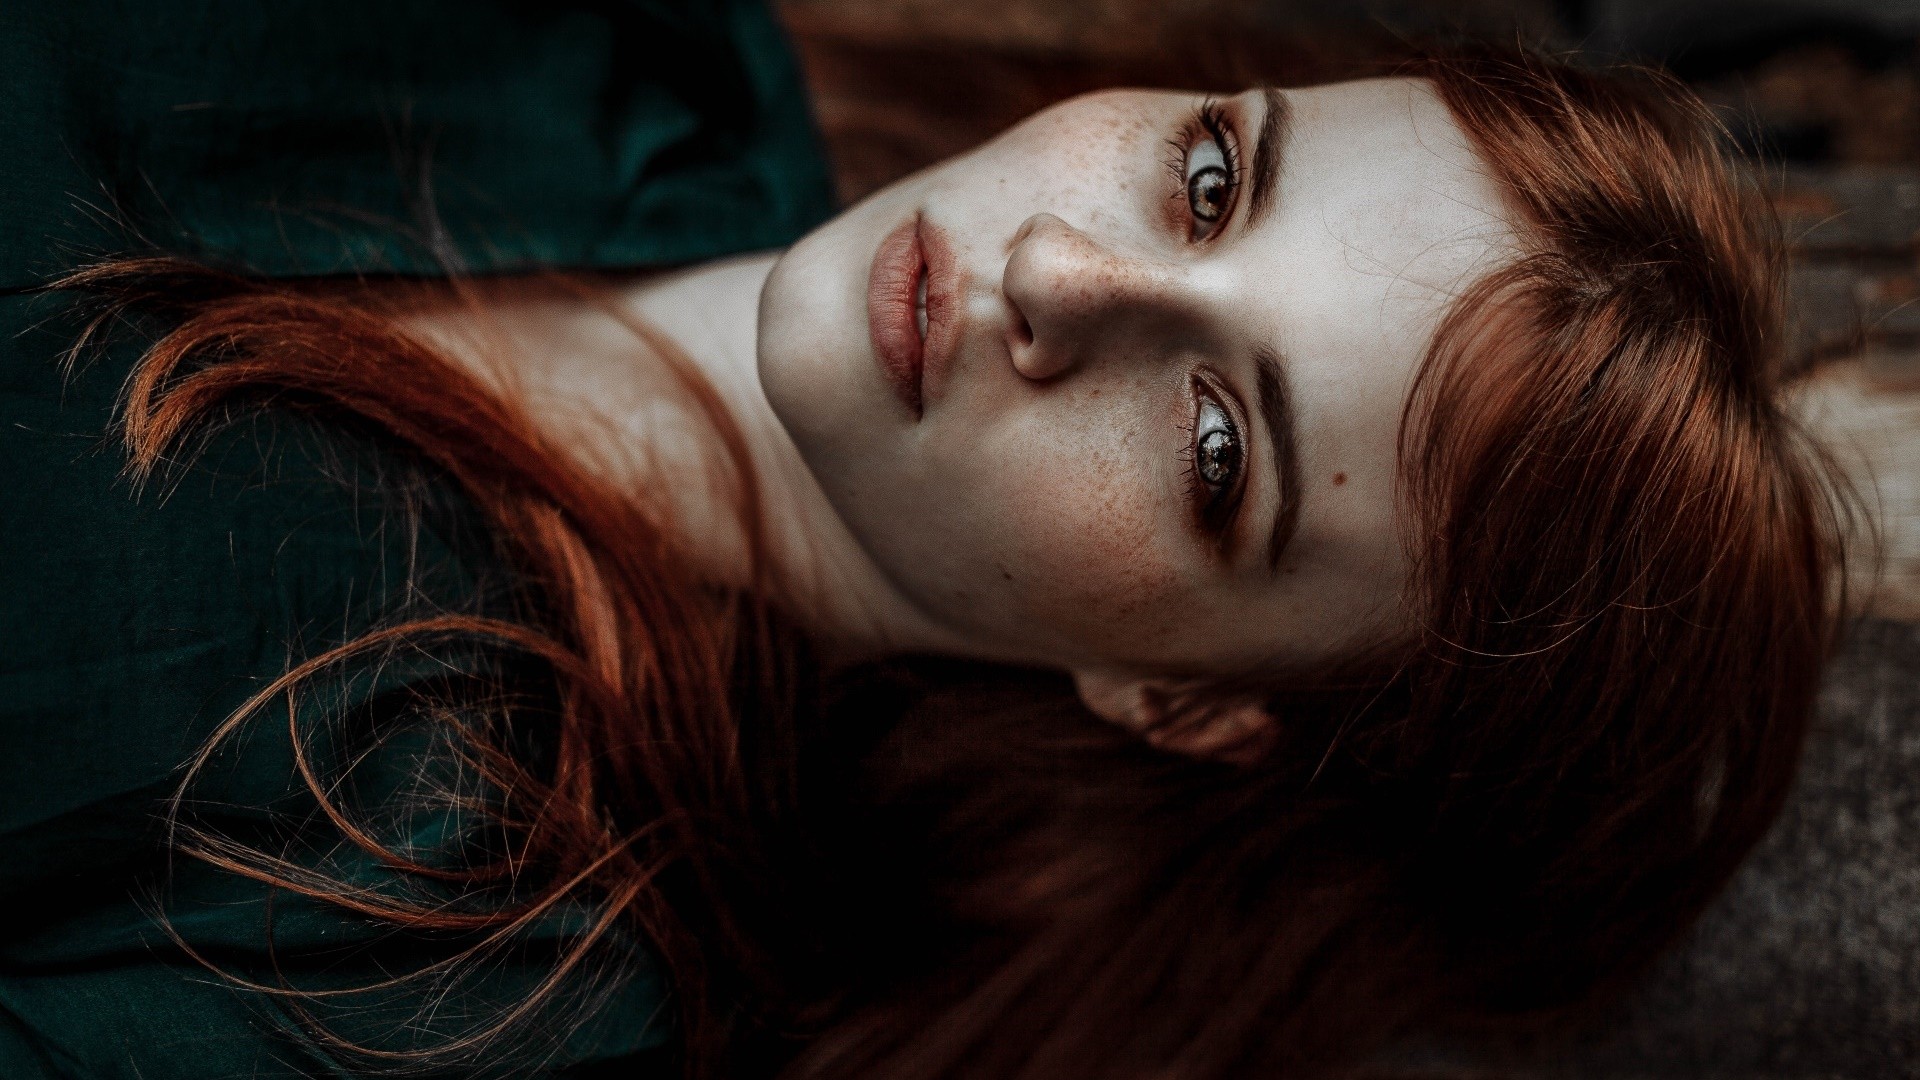 People 1920x1080 portrait face women model redhead lying on back